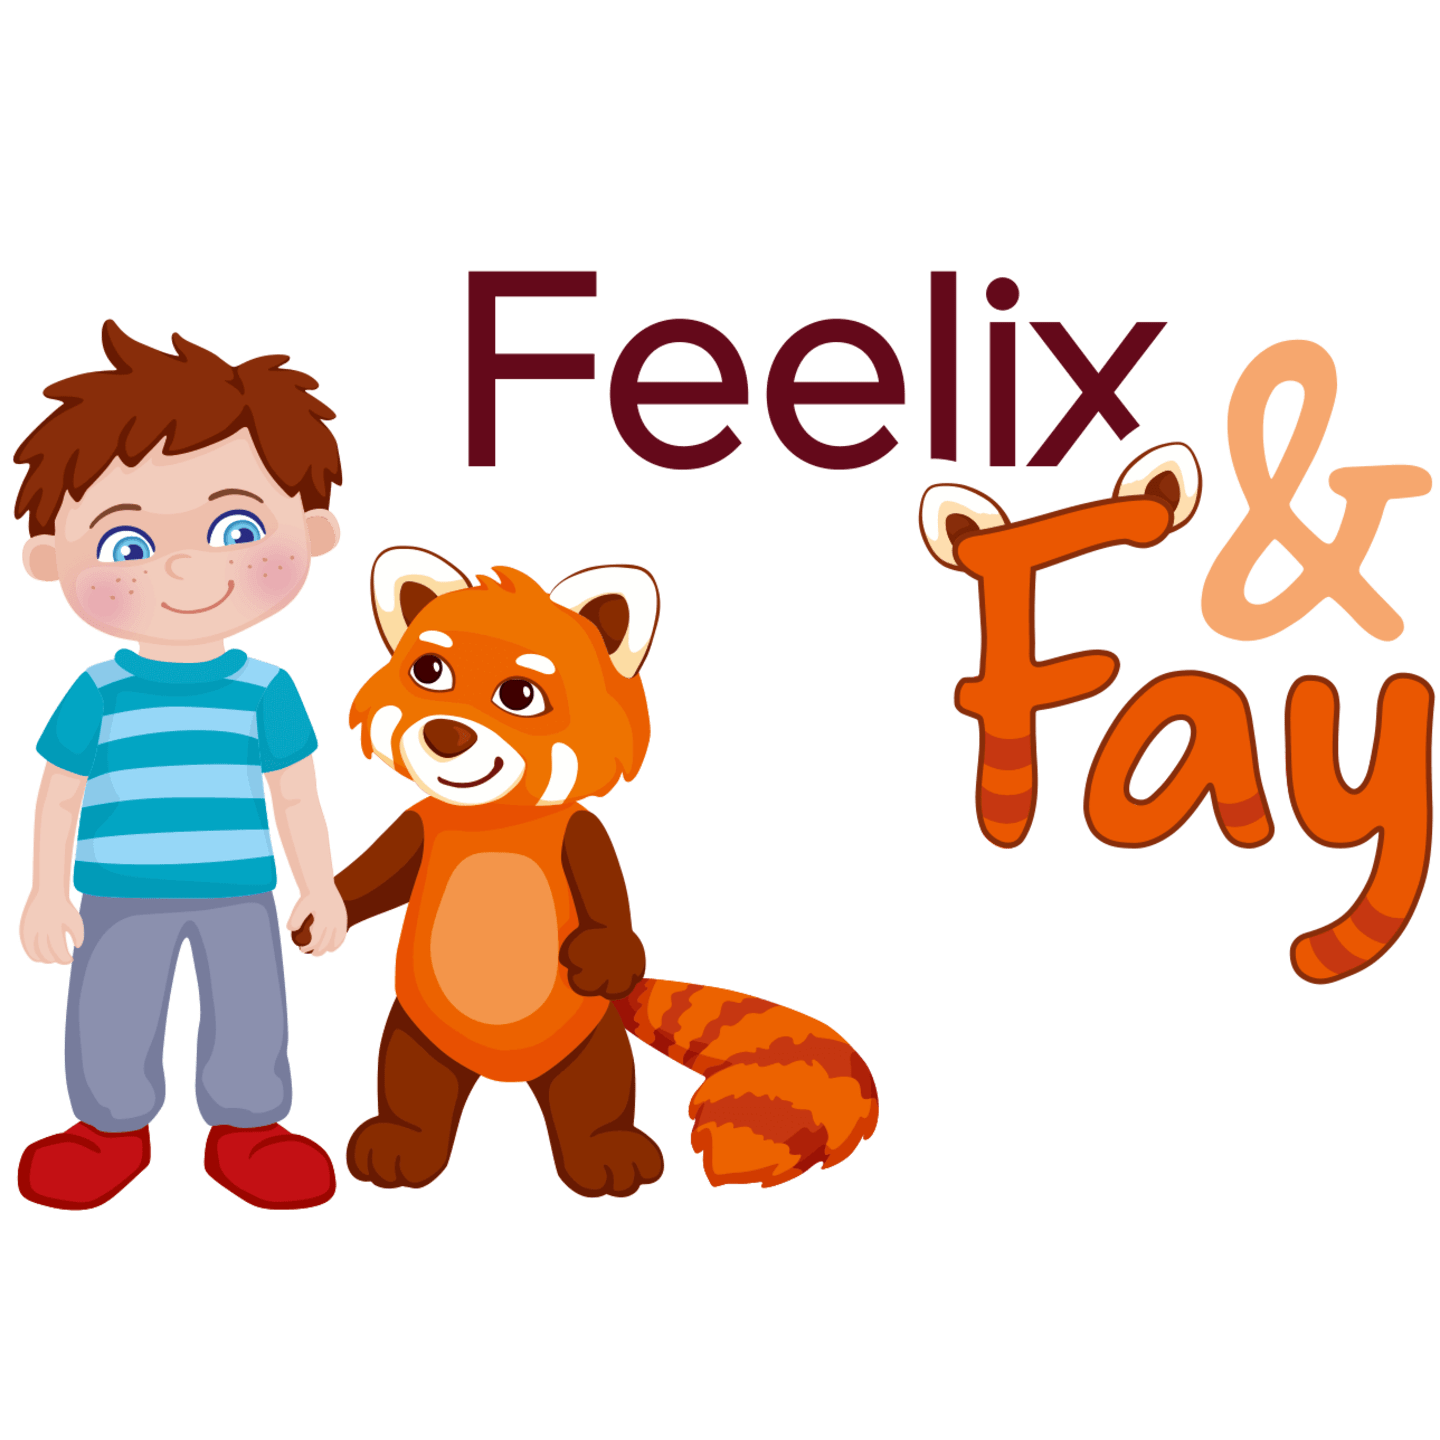 Sozial-emotionale Kompetenzen | Zeichnung von Feelix und Fay. Junge mit Katzenbär